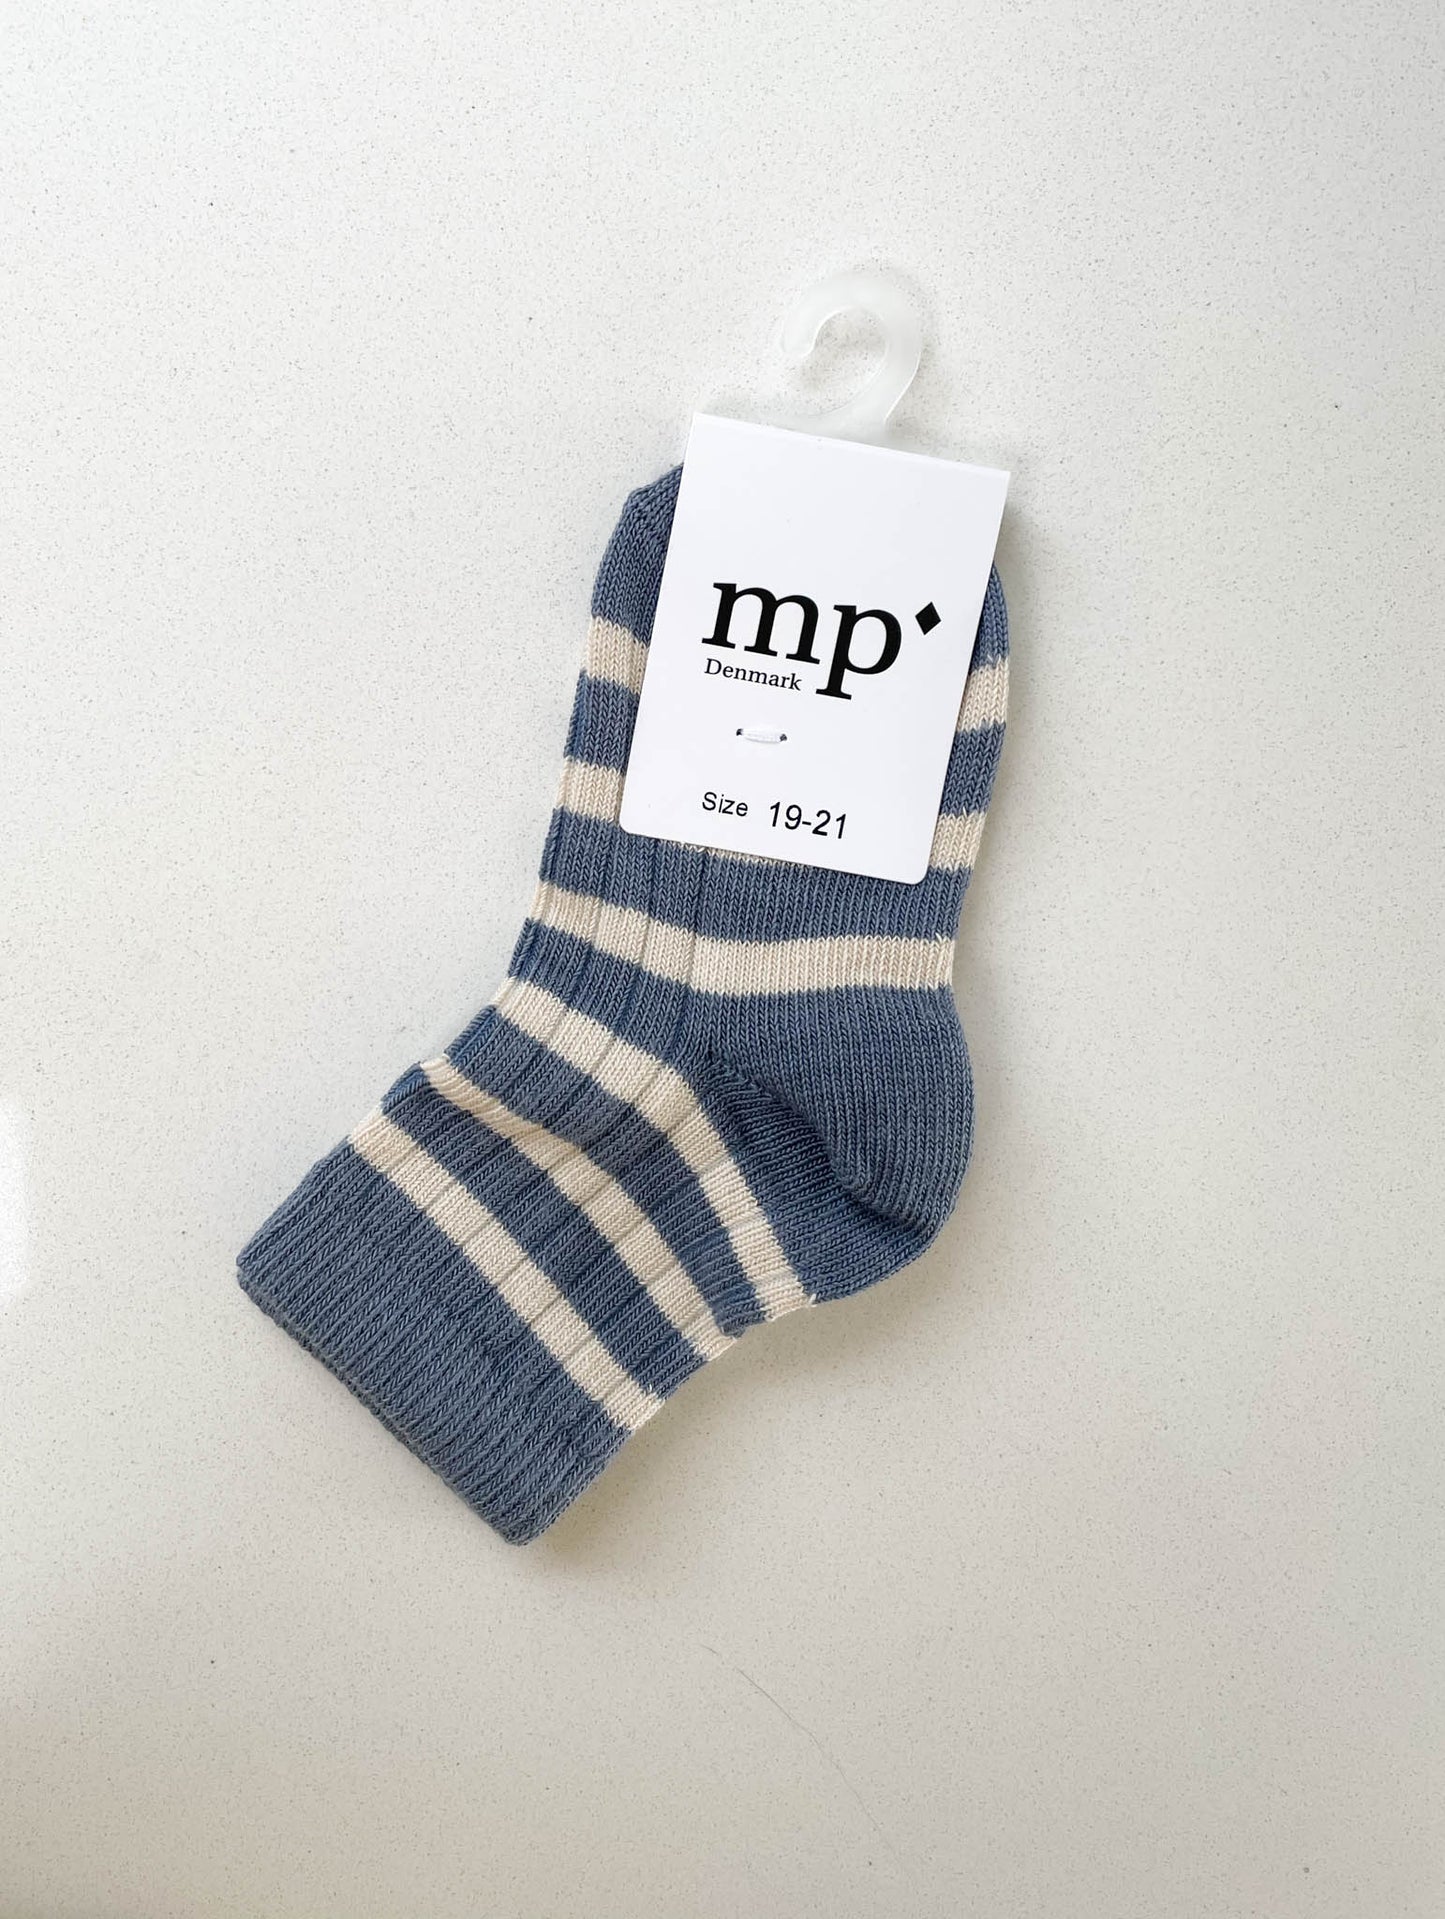 Çorape me vija/Eli socks- Mp Denmark